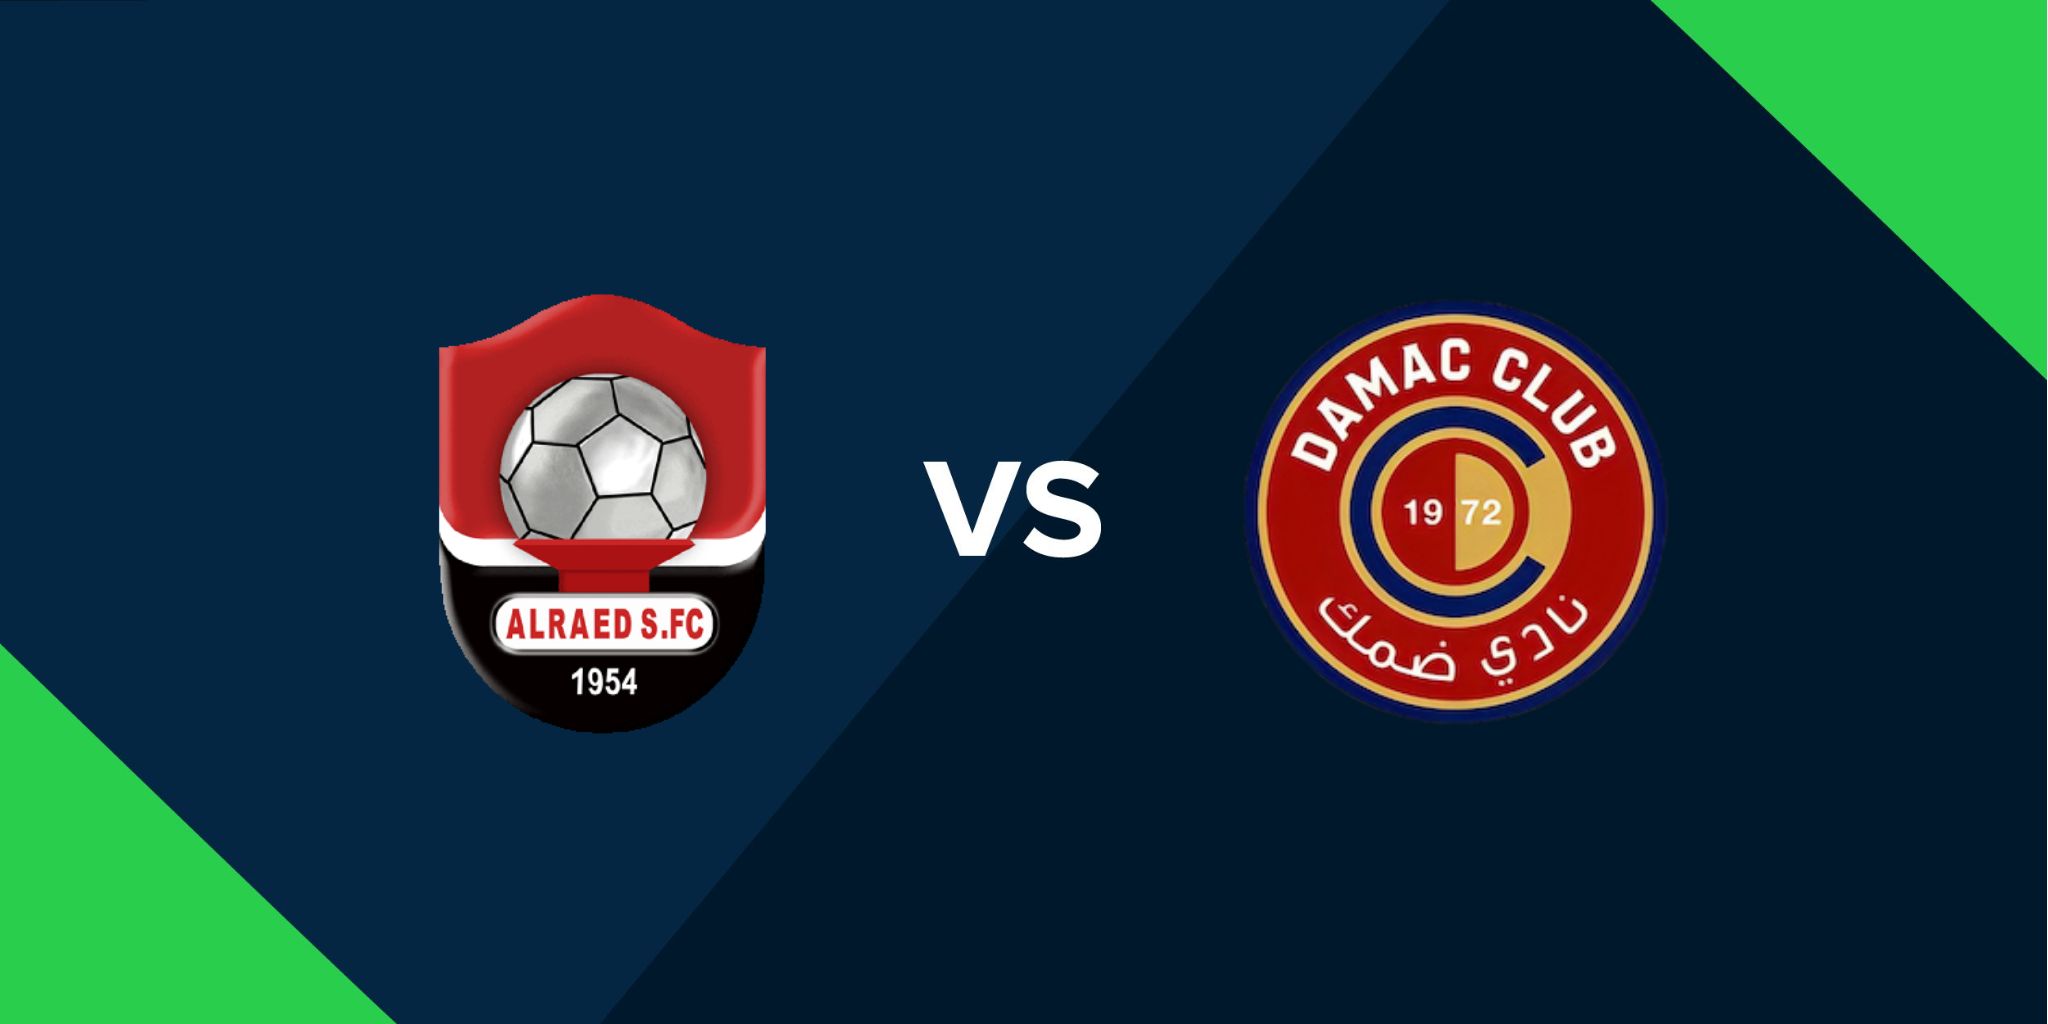 Al Raed vs Damac futebol palpites hoje 15/12/2023